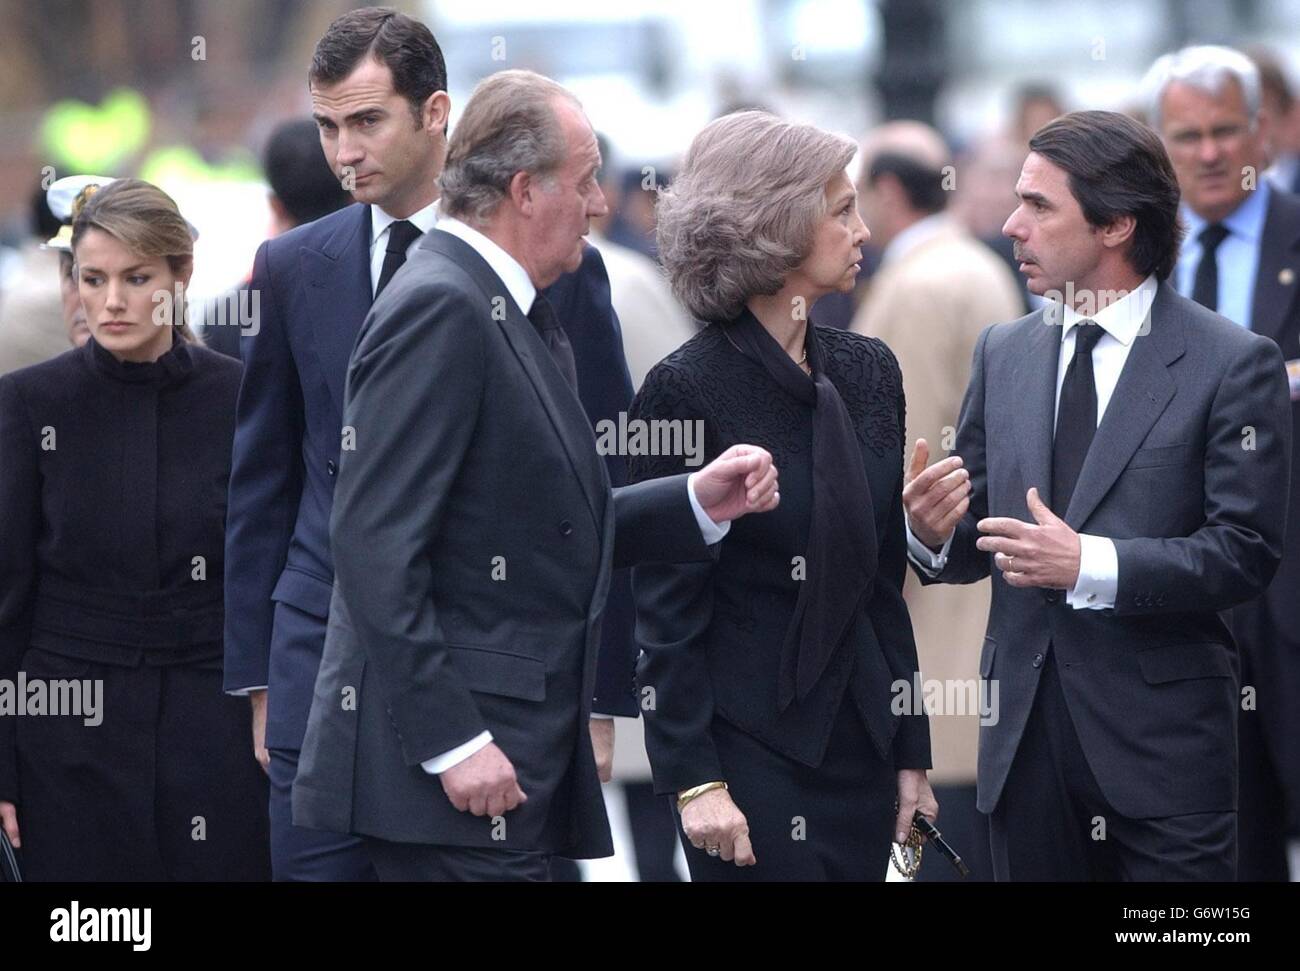 Der scheidende konservative spanische Premierminister Jose Maria Aznar (R) trifft sich mit König Juan Carlos von Spanien und seiner Frau, Königin Sofia von Spanien, Als sie am 11. März bei der Gedenkmesse in Madrids Almudena-Kathedrale für die 190 Menschen ankommen, die bei koordinierten Bombenexplosionen an Bord von vier überfüllten S-Bahn-Zügen ums Leben gekommen sind. Stockfoto